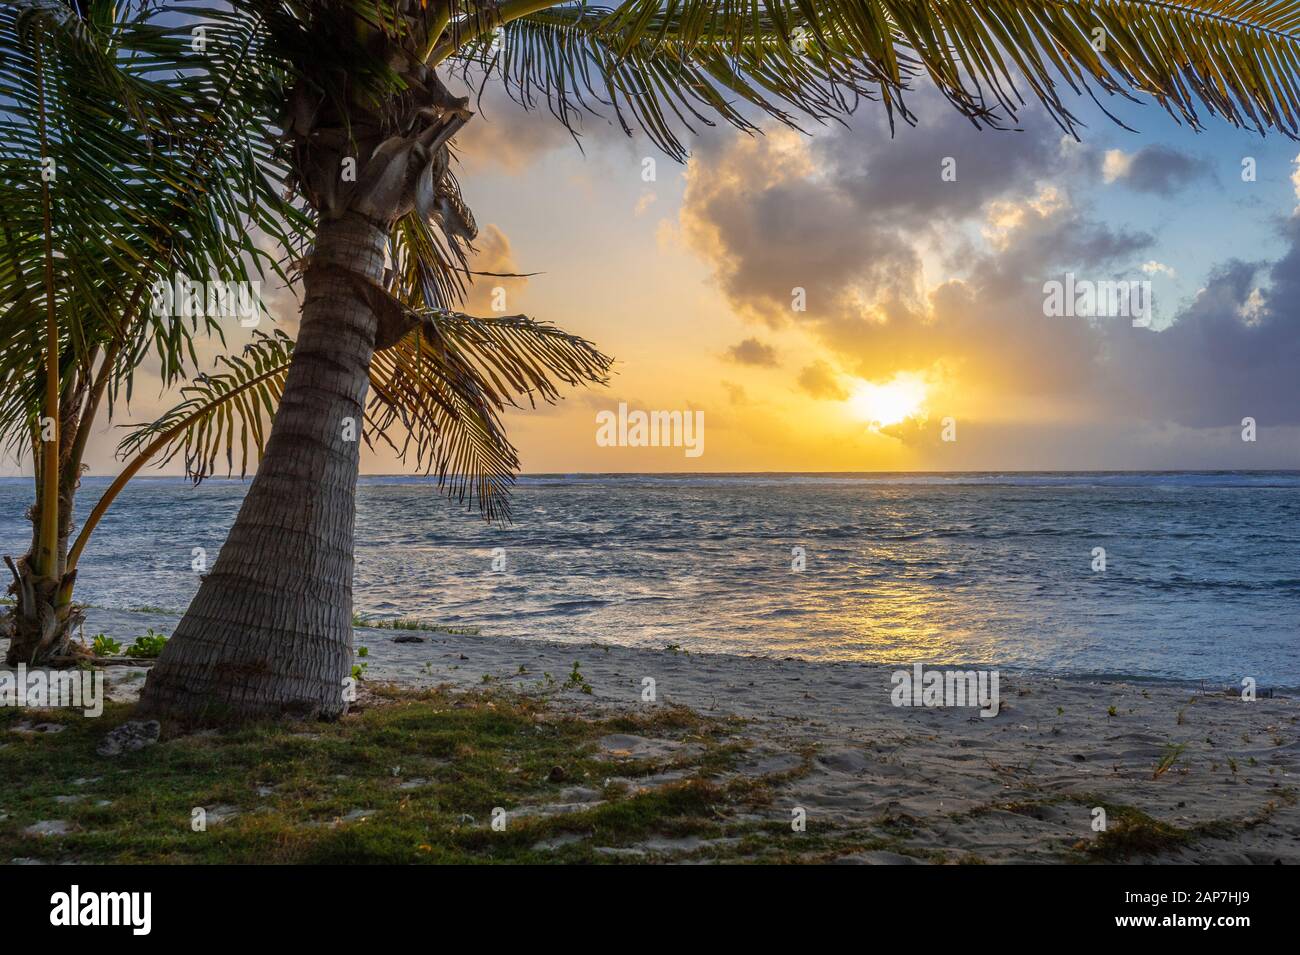 Palme e spiaggia sabbiosa all'alba, perfetta posizione tropicale, Grand Cayman Island Foto Stock